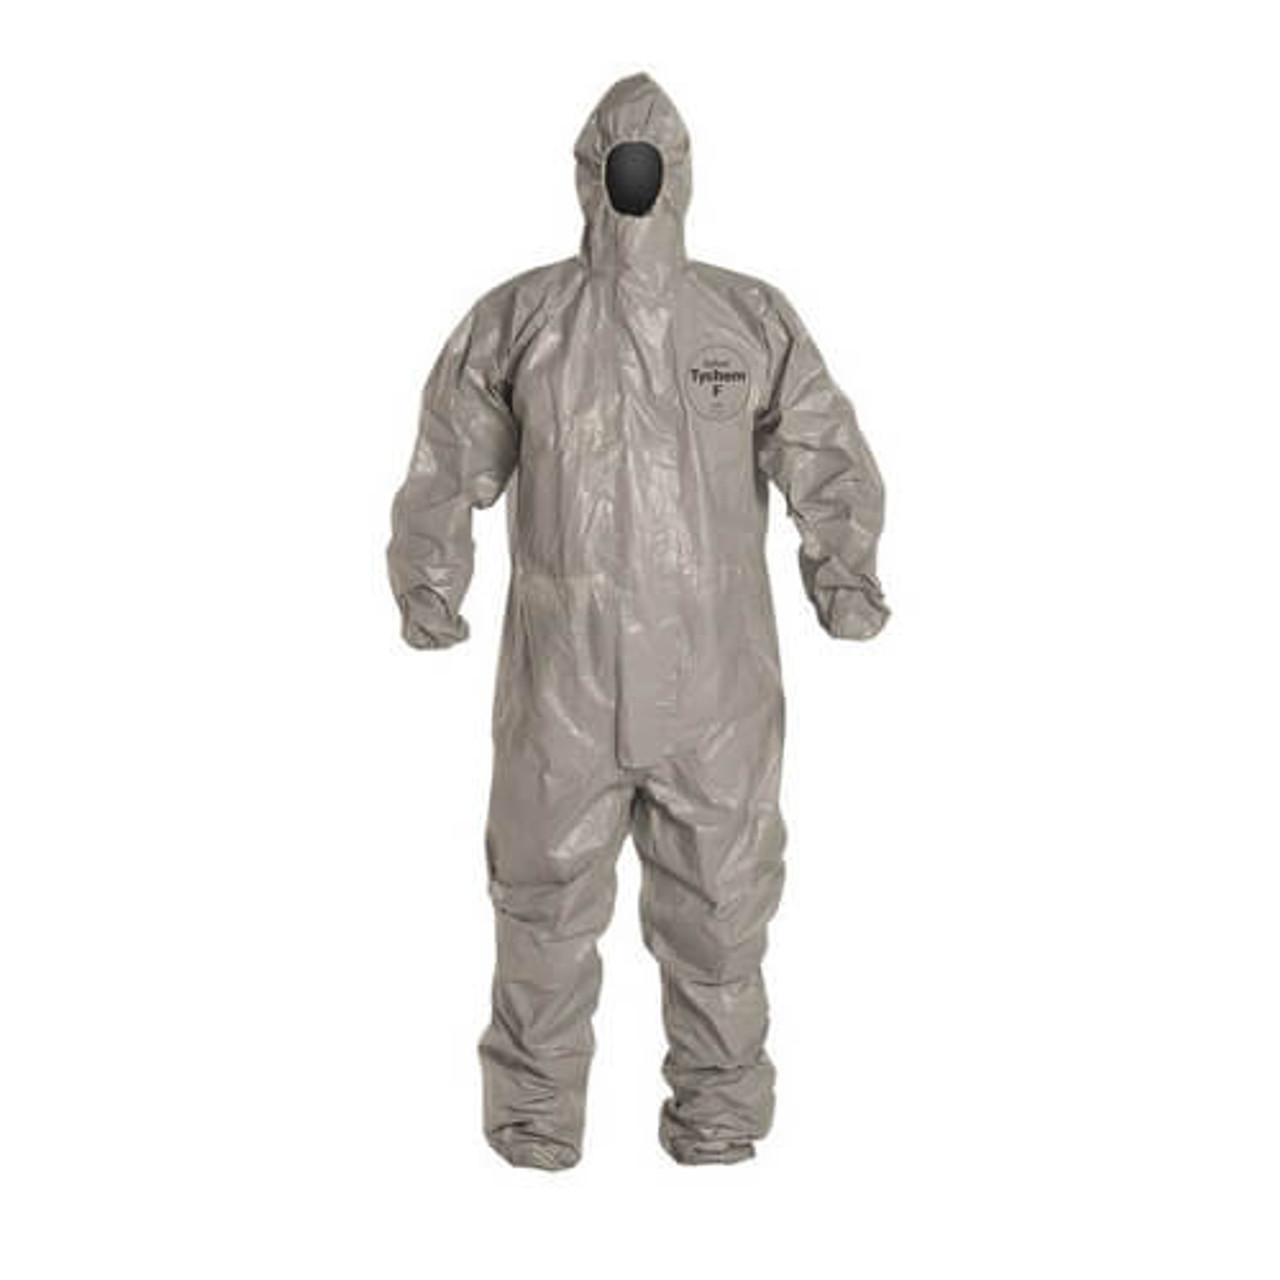 Tychem Responder CSM Encapsulated Level A Hazmat Protection Suit